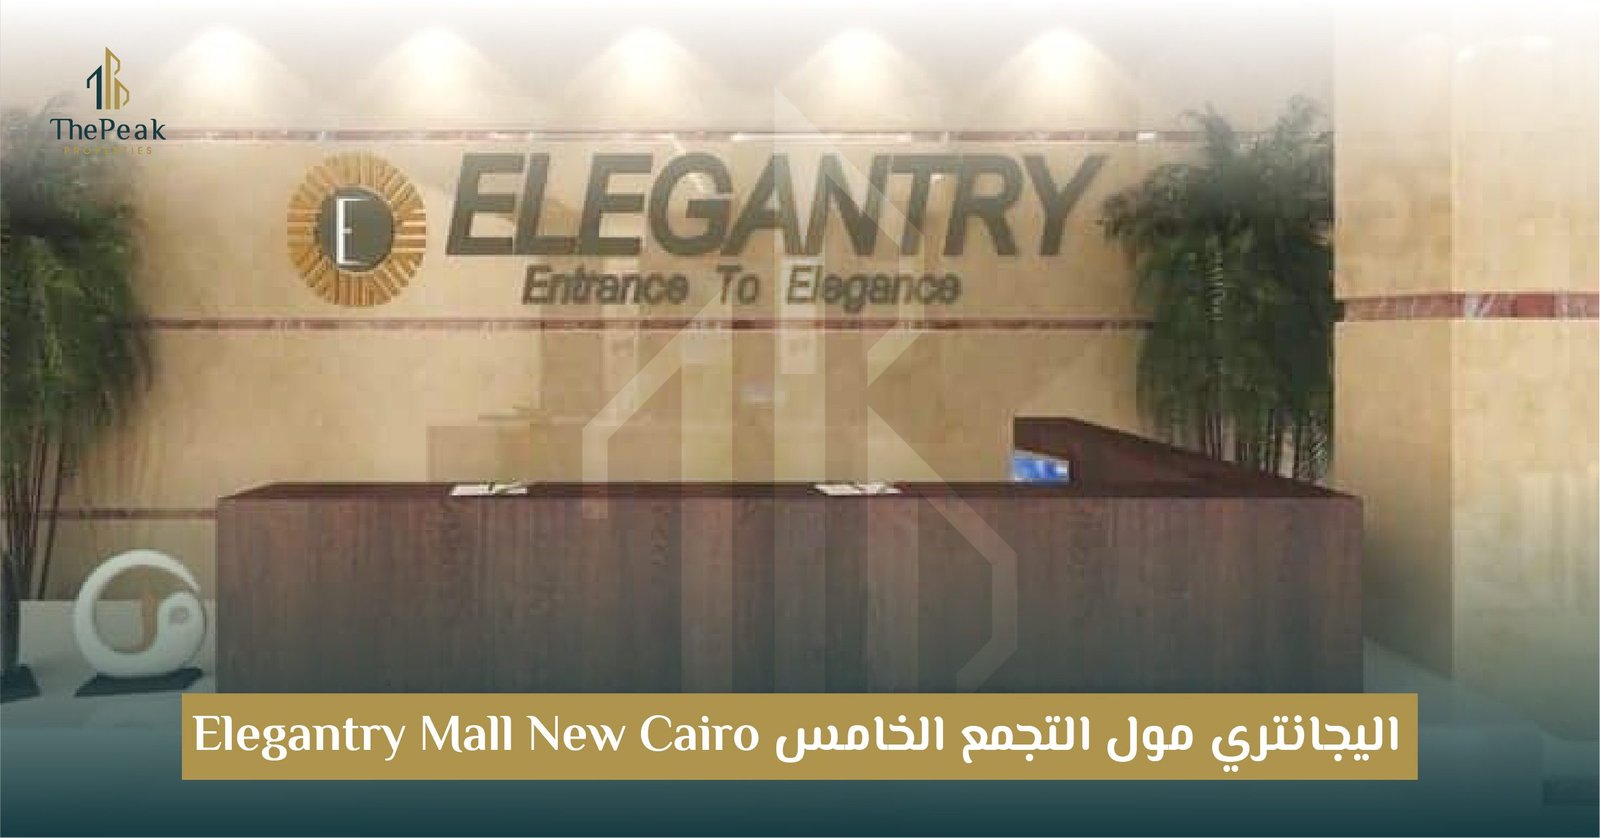 مول إلجانتري بالتجمع الخامس ElEGantry New Cairo